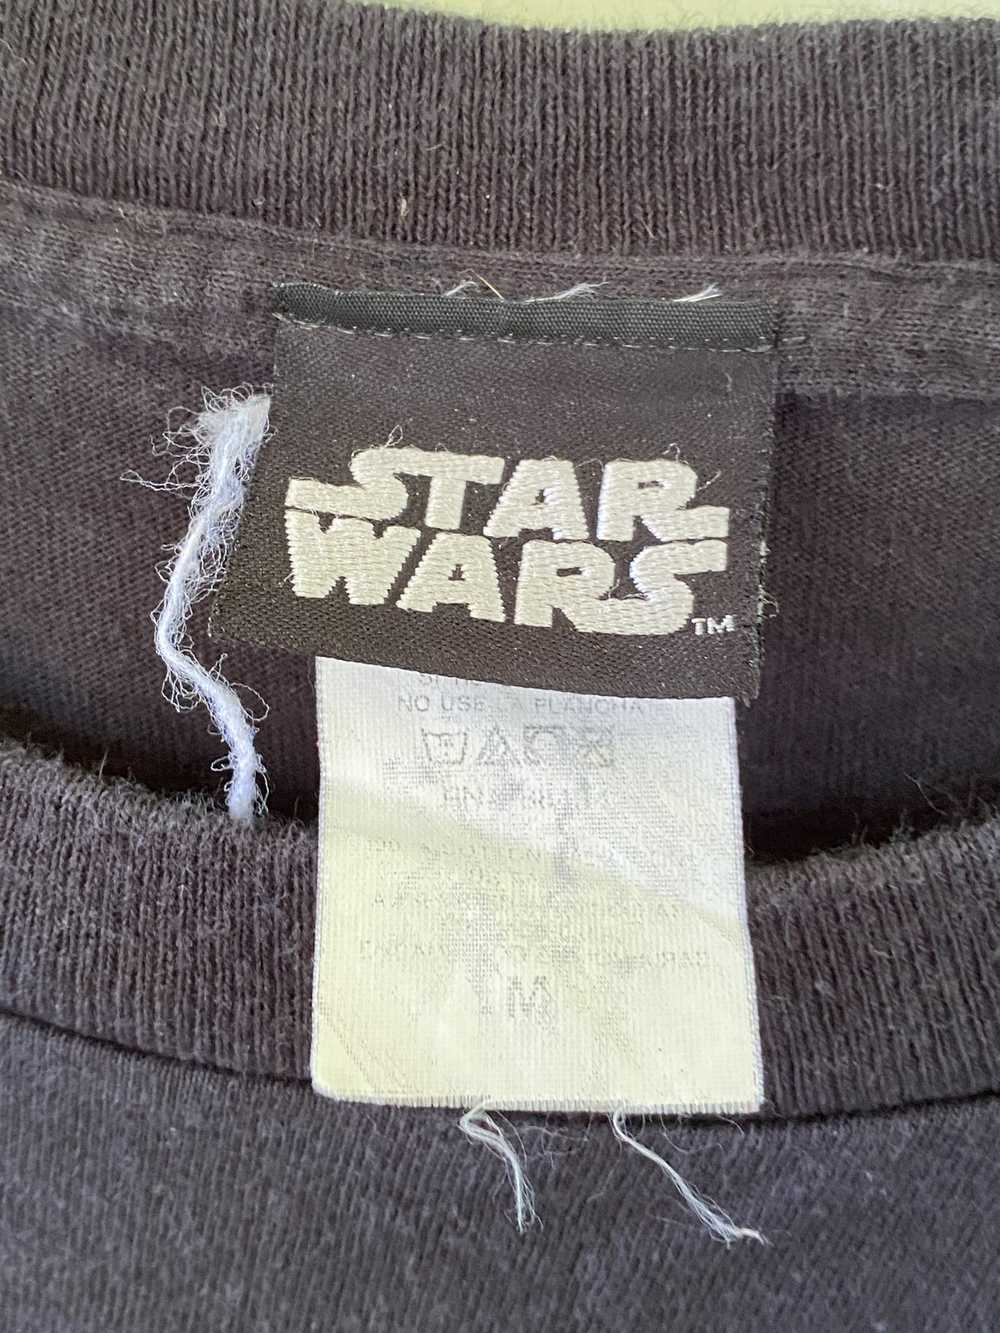 Star Wars × Vintage Vintage Star Wars Shirt - image 5